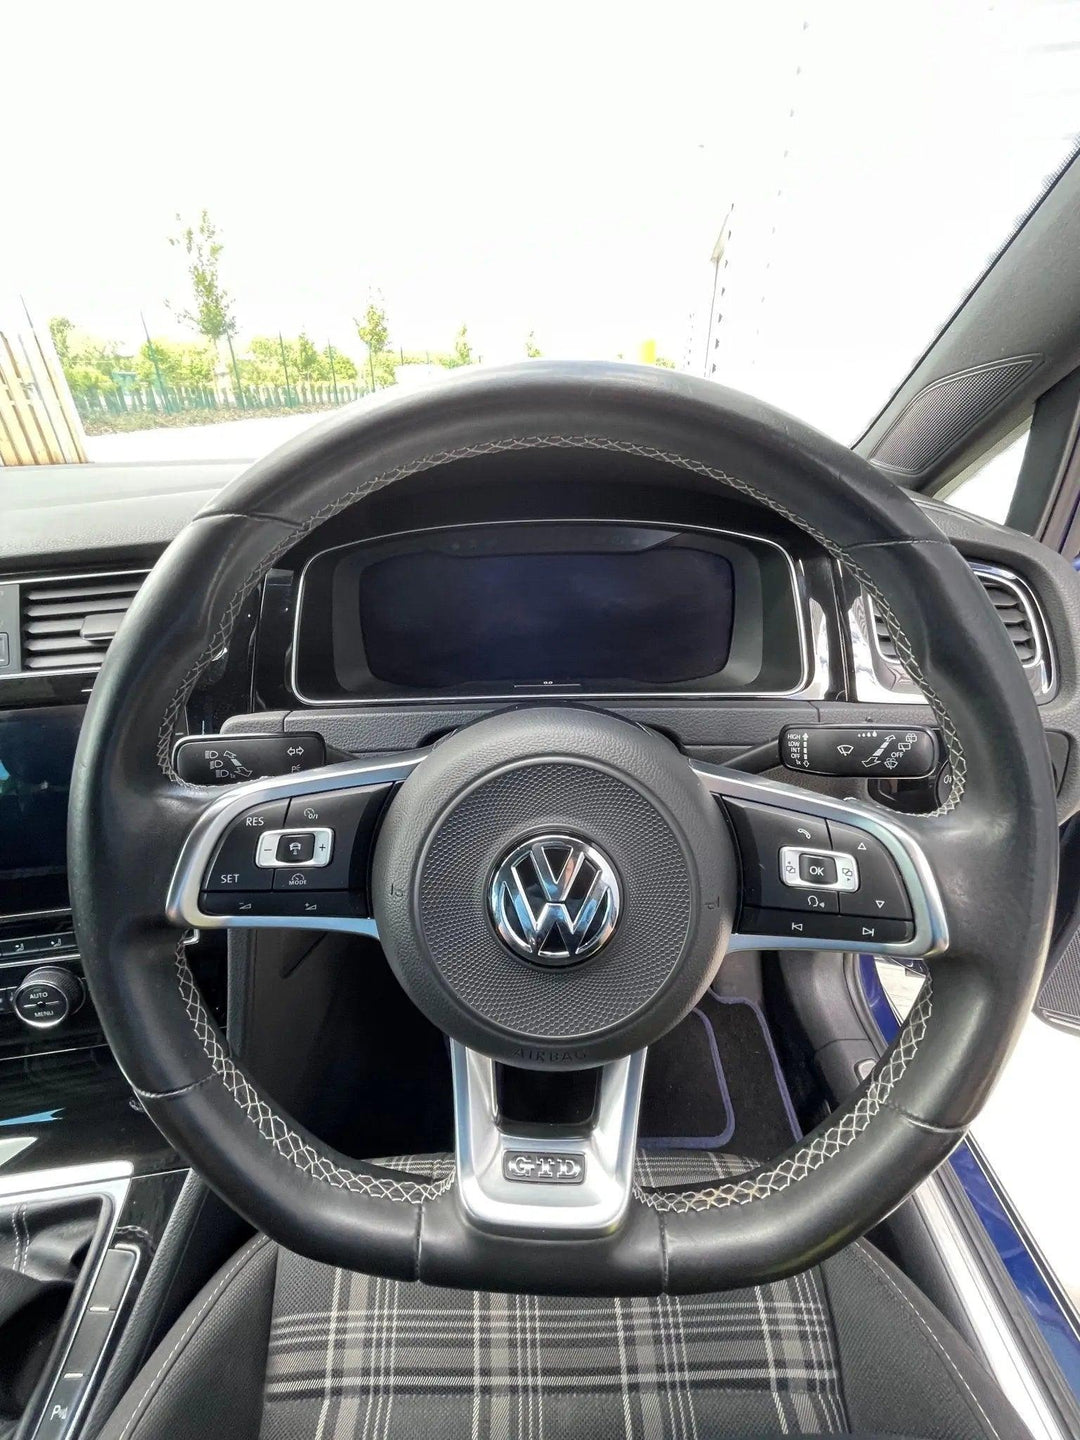 Volkswagen Golf | GC17EWA Hatchback Wildworx Wildworx | Campervan Conversions, Sales & Accessories